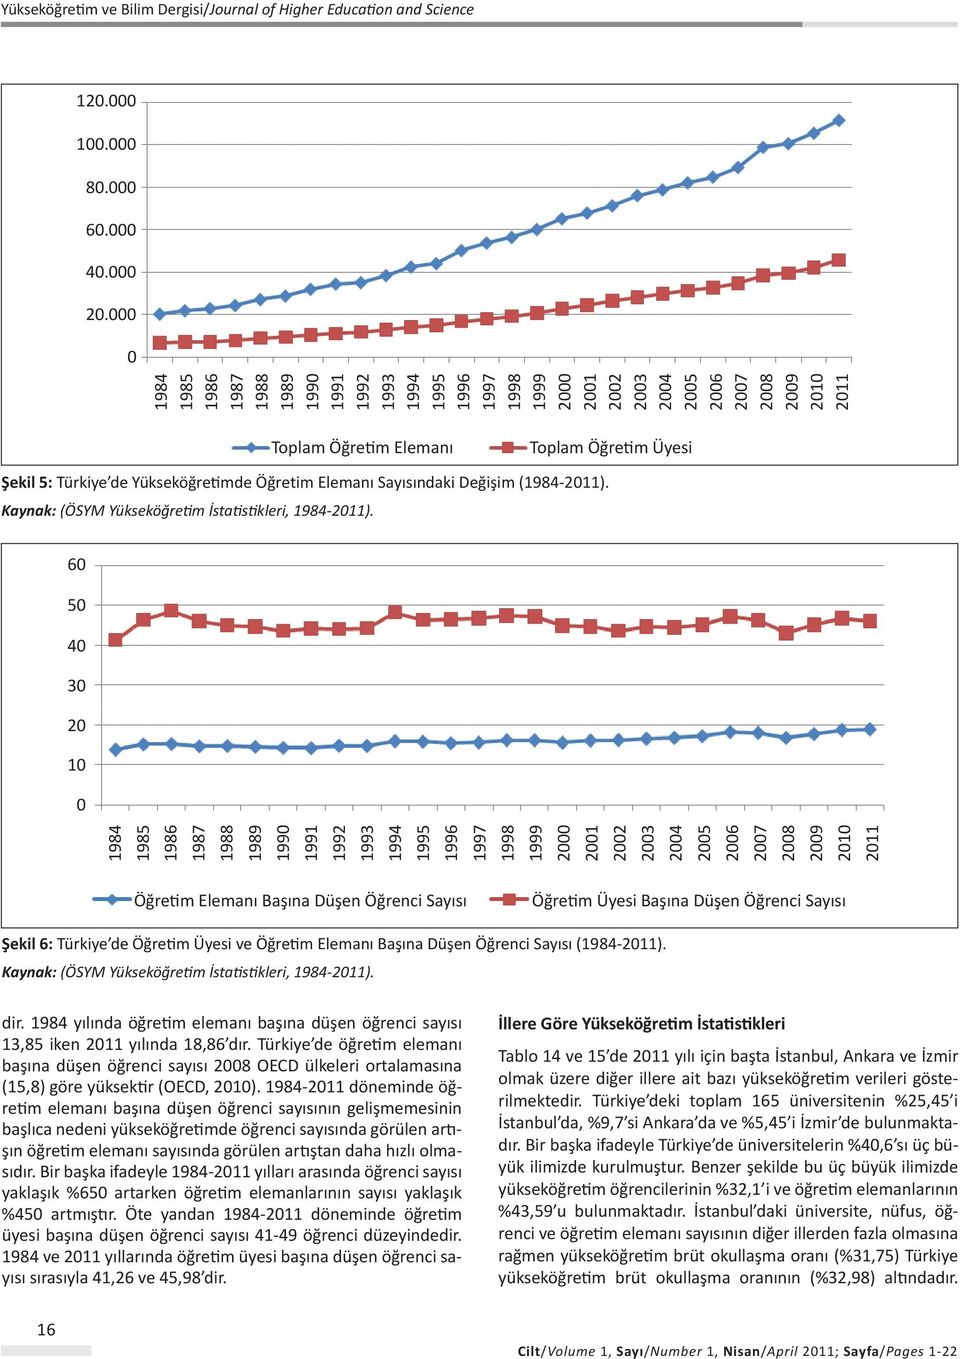 Türkiye de Yükseköğretimde Öğretim Elemanı Sayısındaki Değişim (1984-2011). Kaynak: (ÖSYM Yükseköğretim İstatistikleri, 1984-2011).